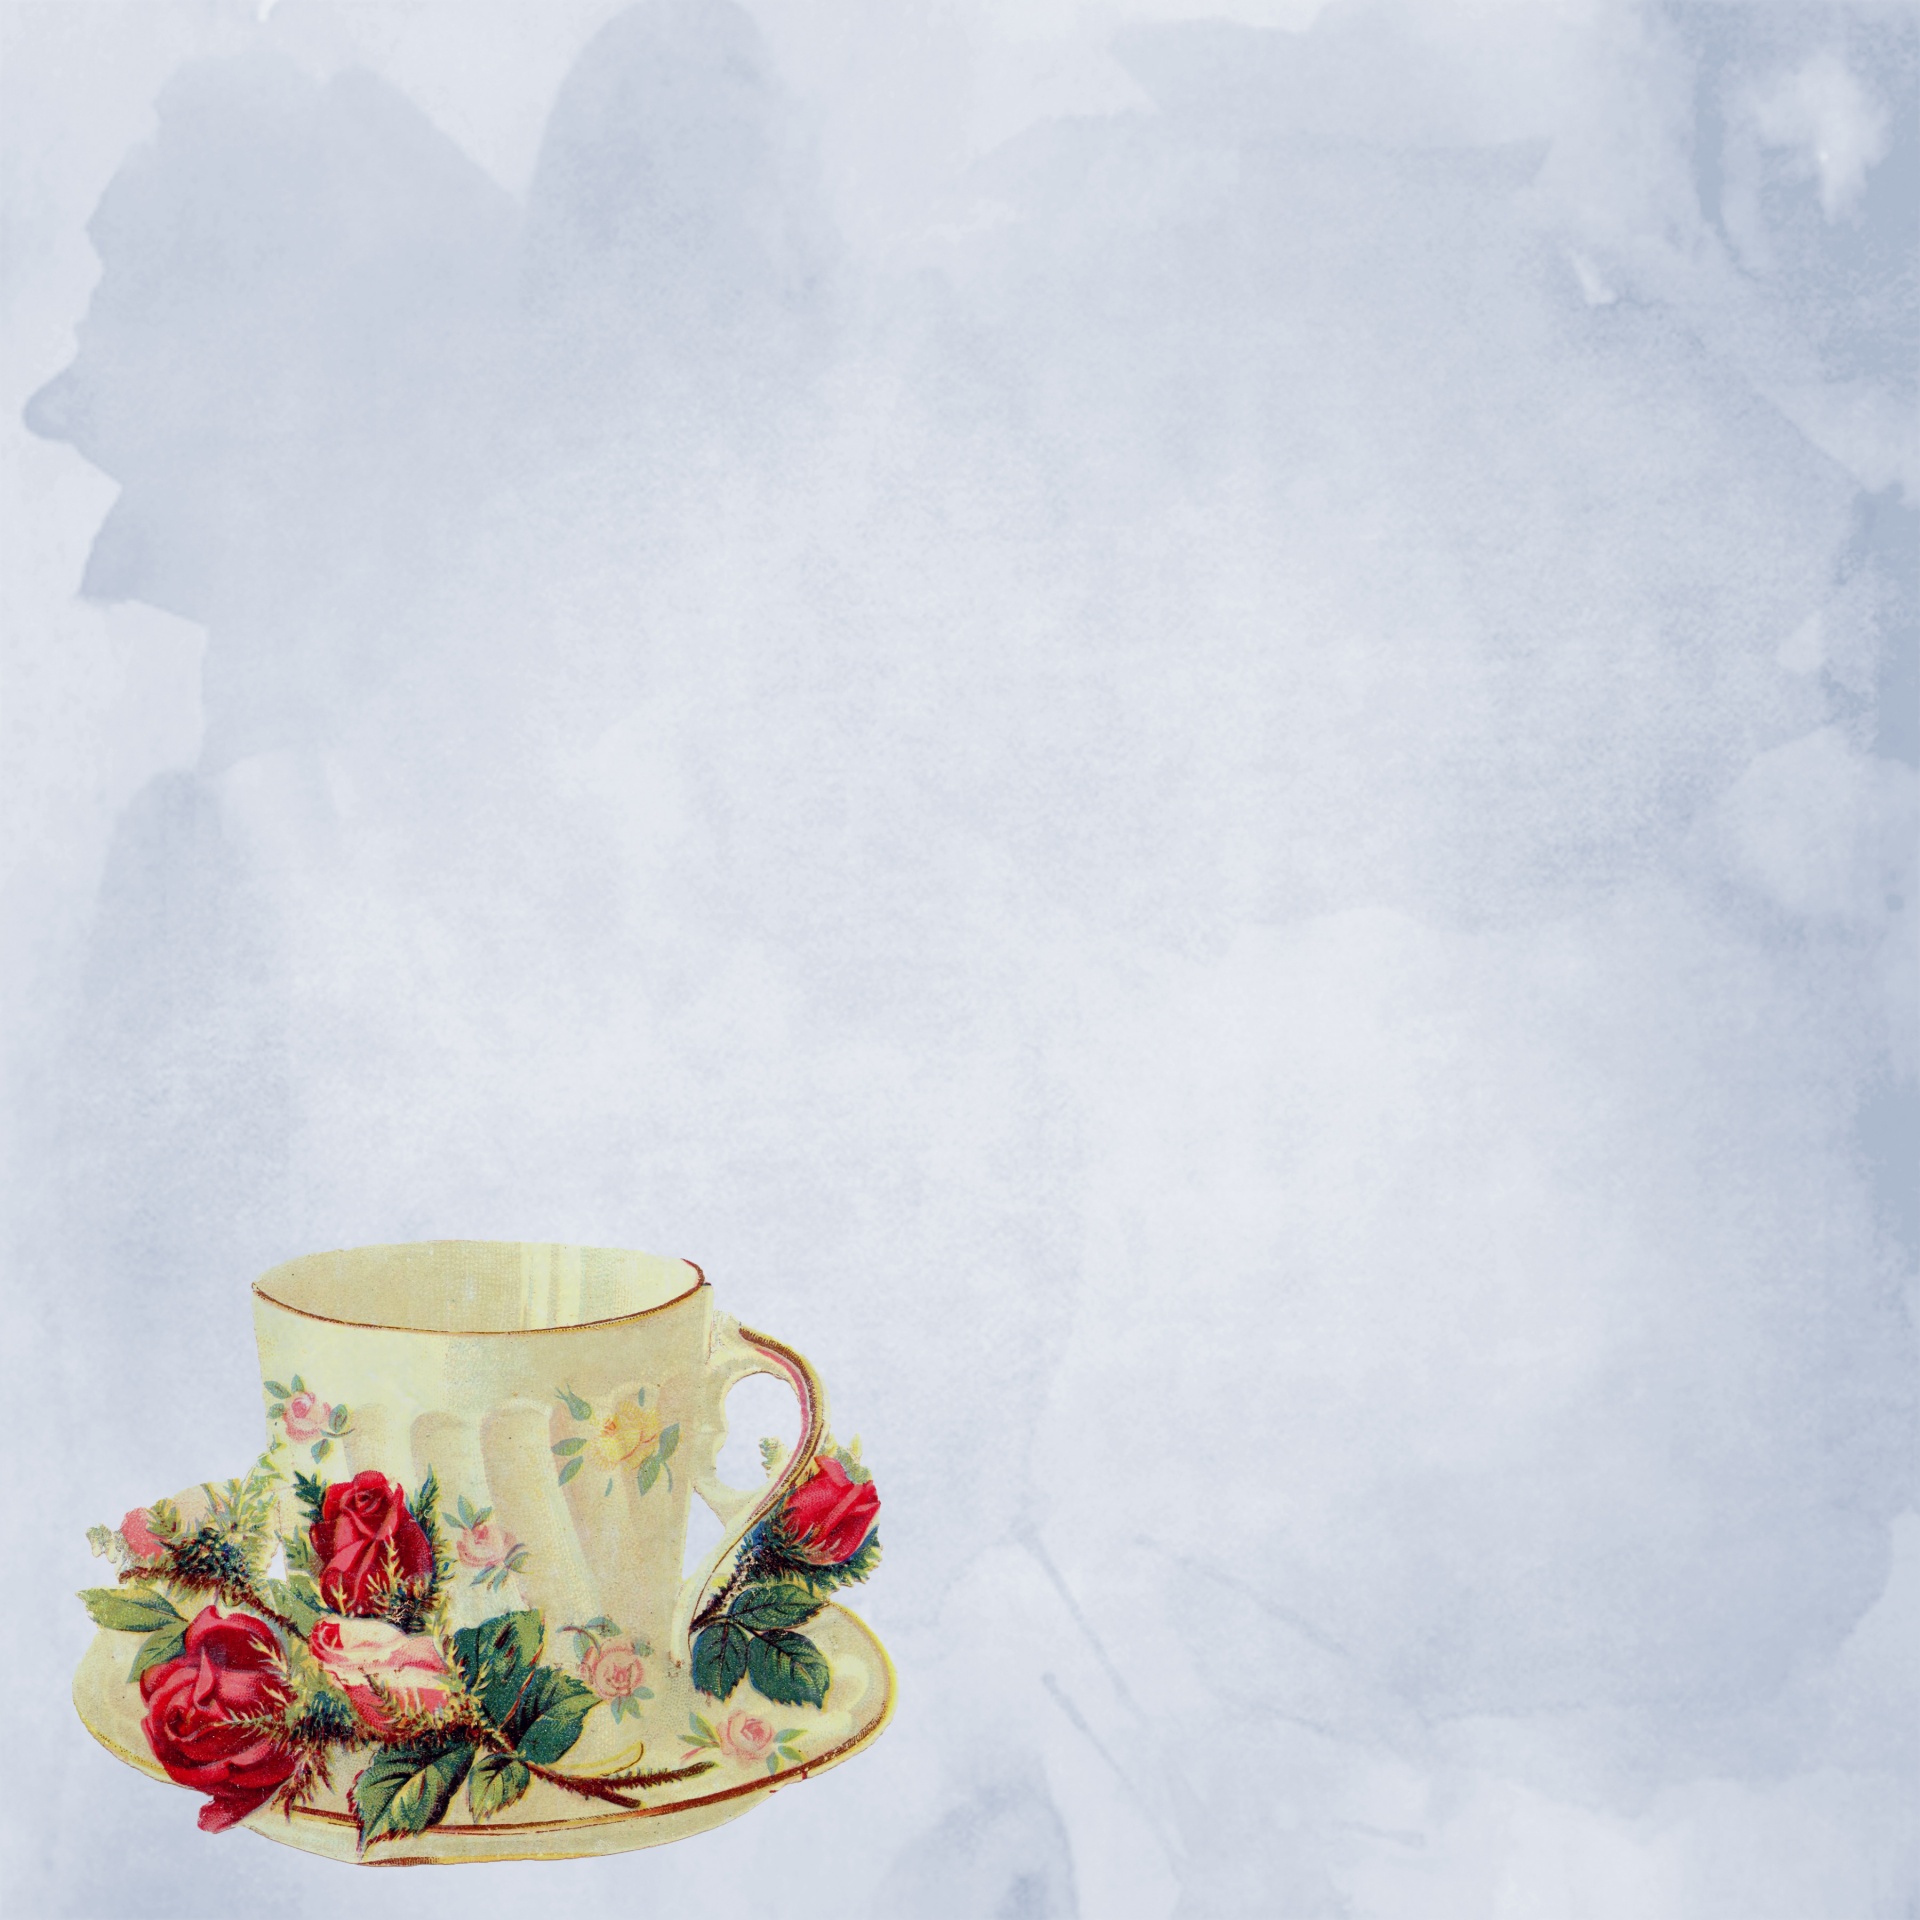 Teacup do vintage com rosas